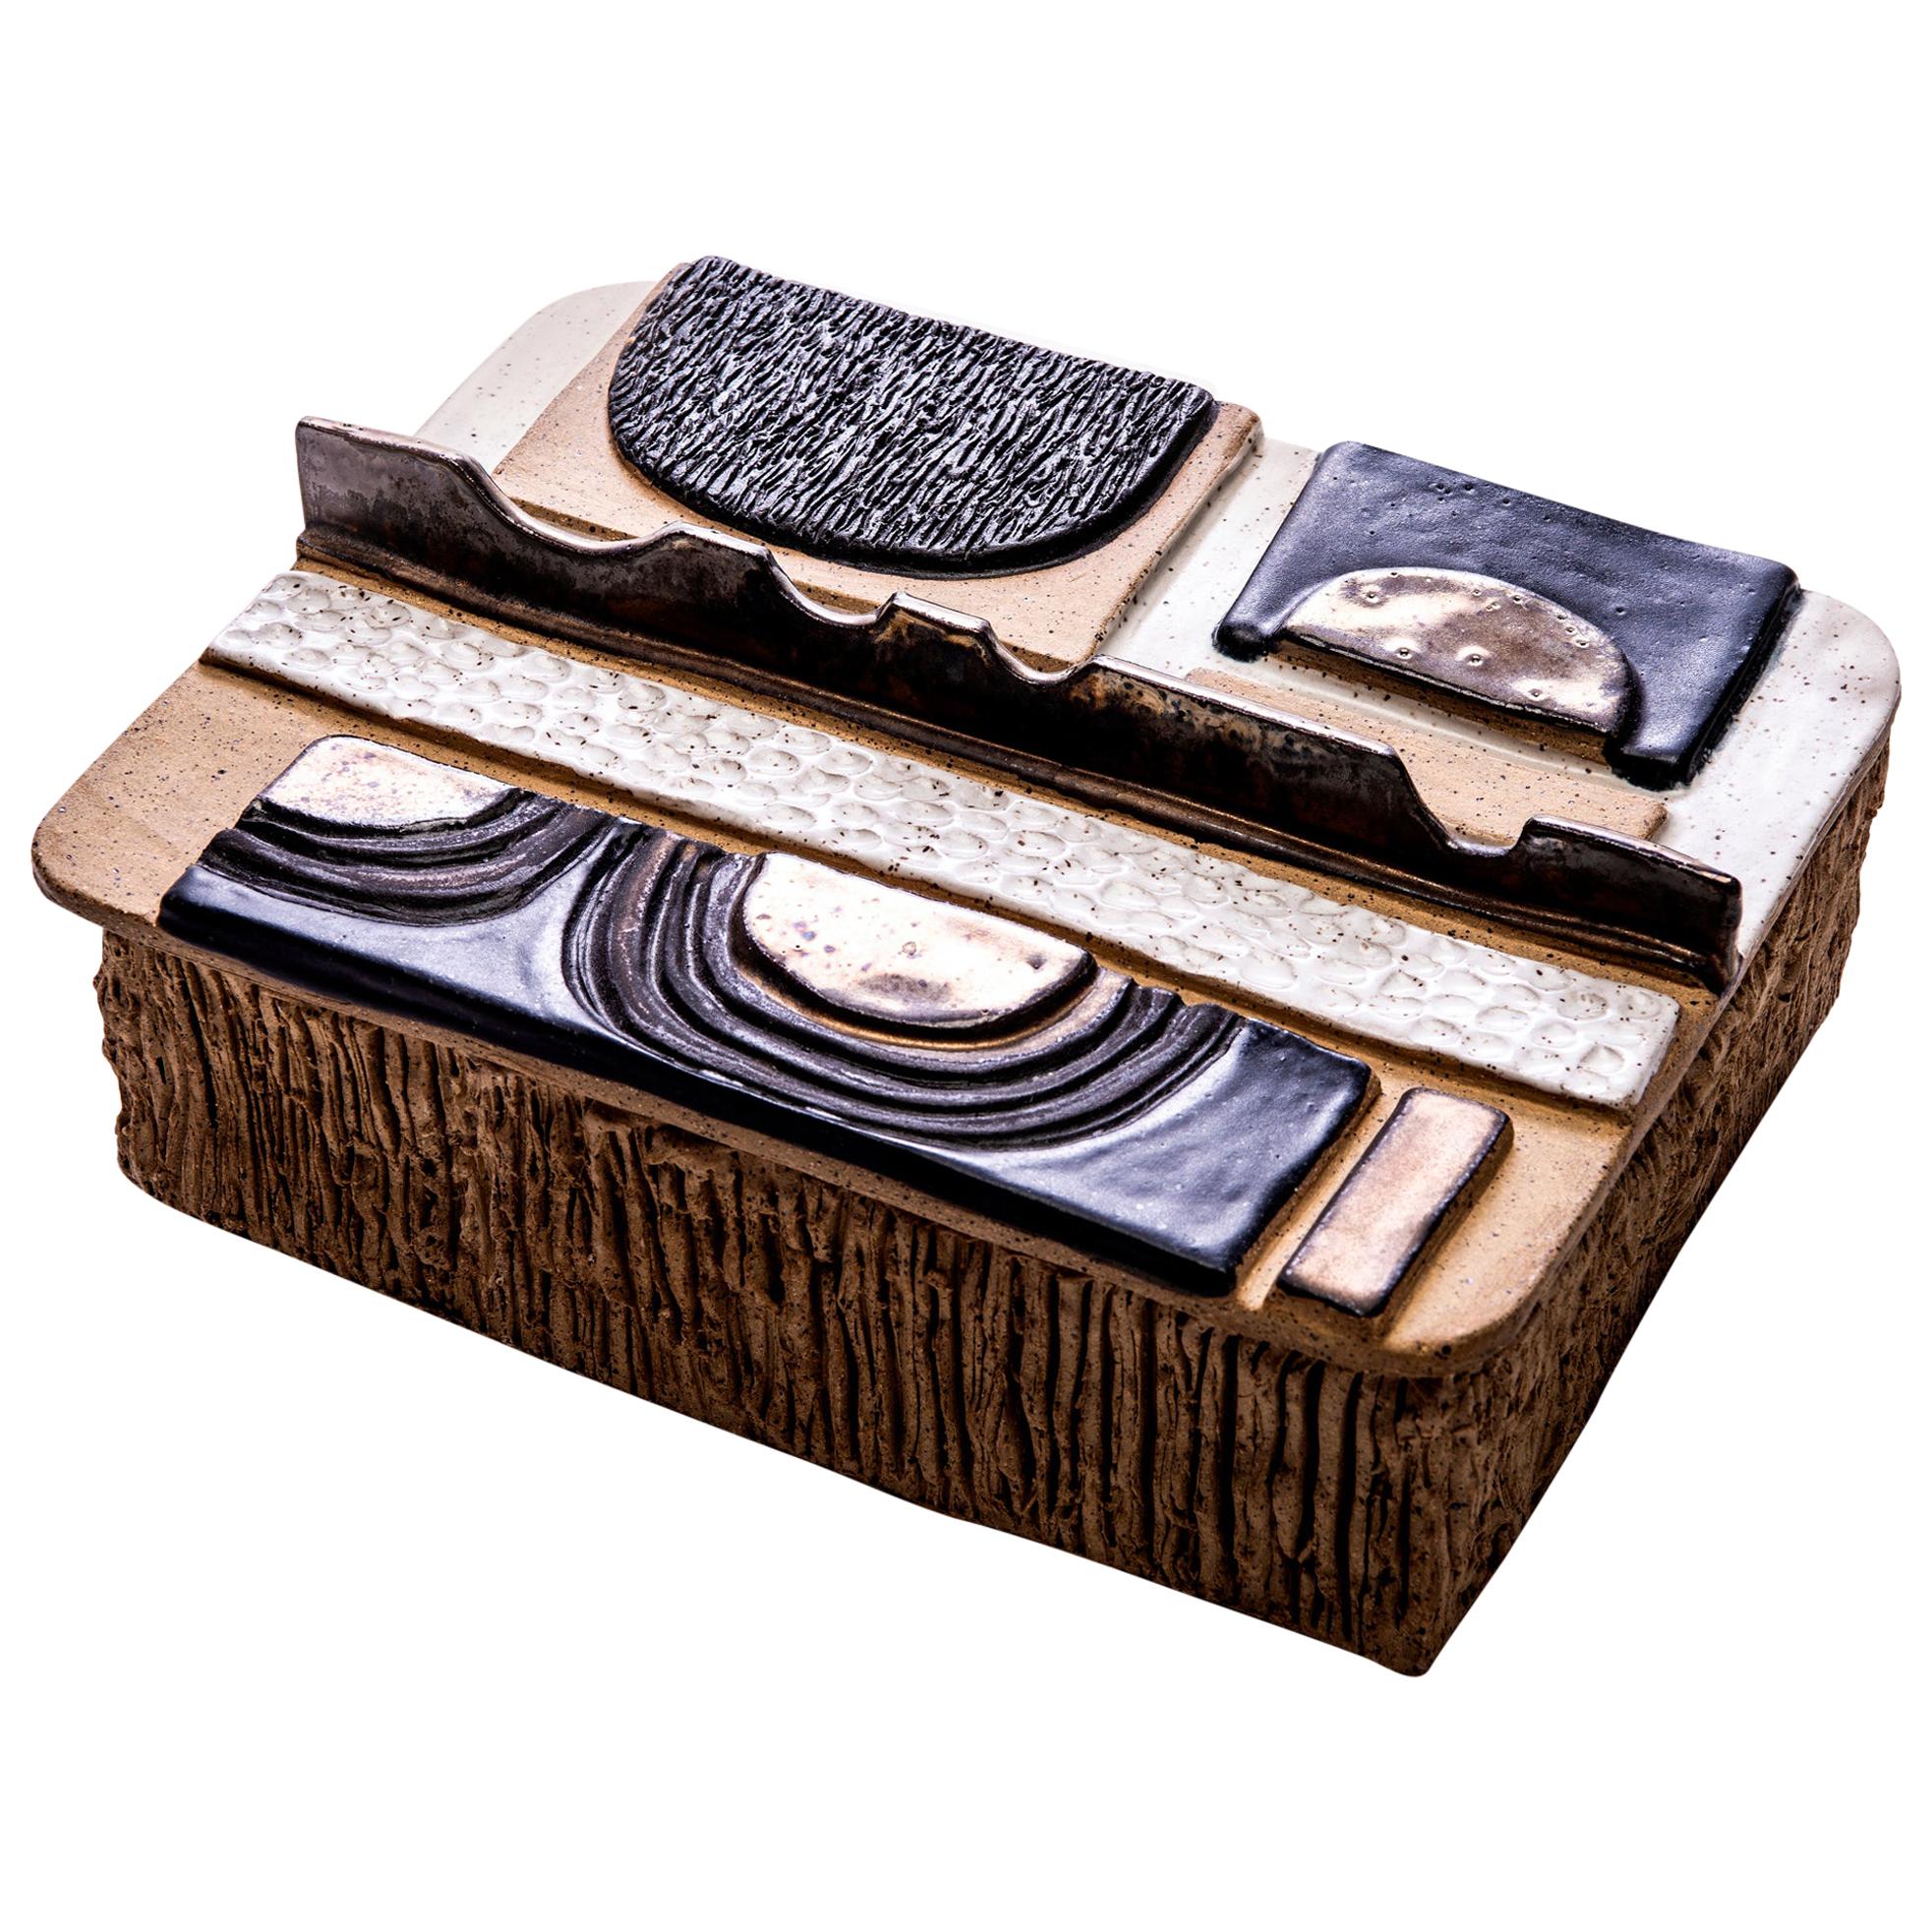 Aldo Moderno Box in Glazed Ceramic by Trish DeMasi